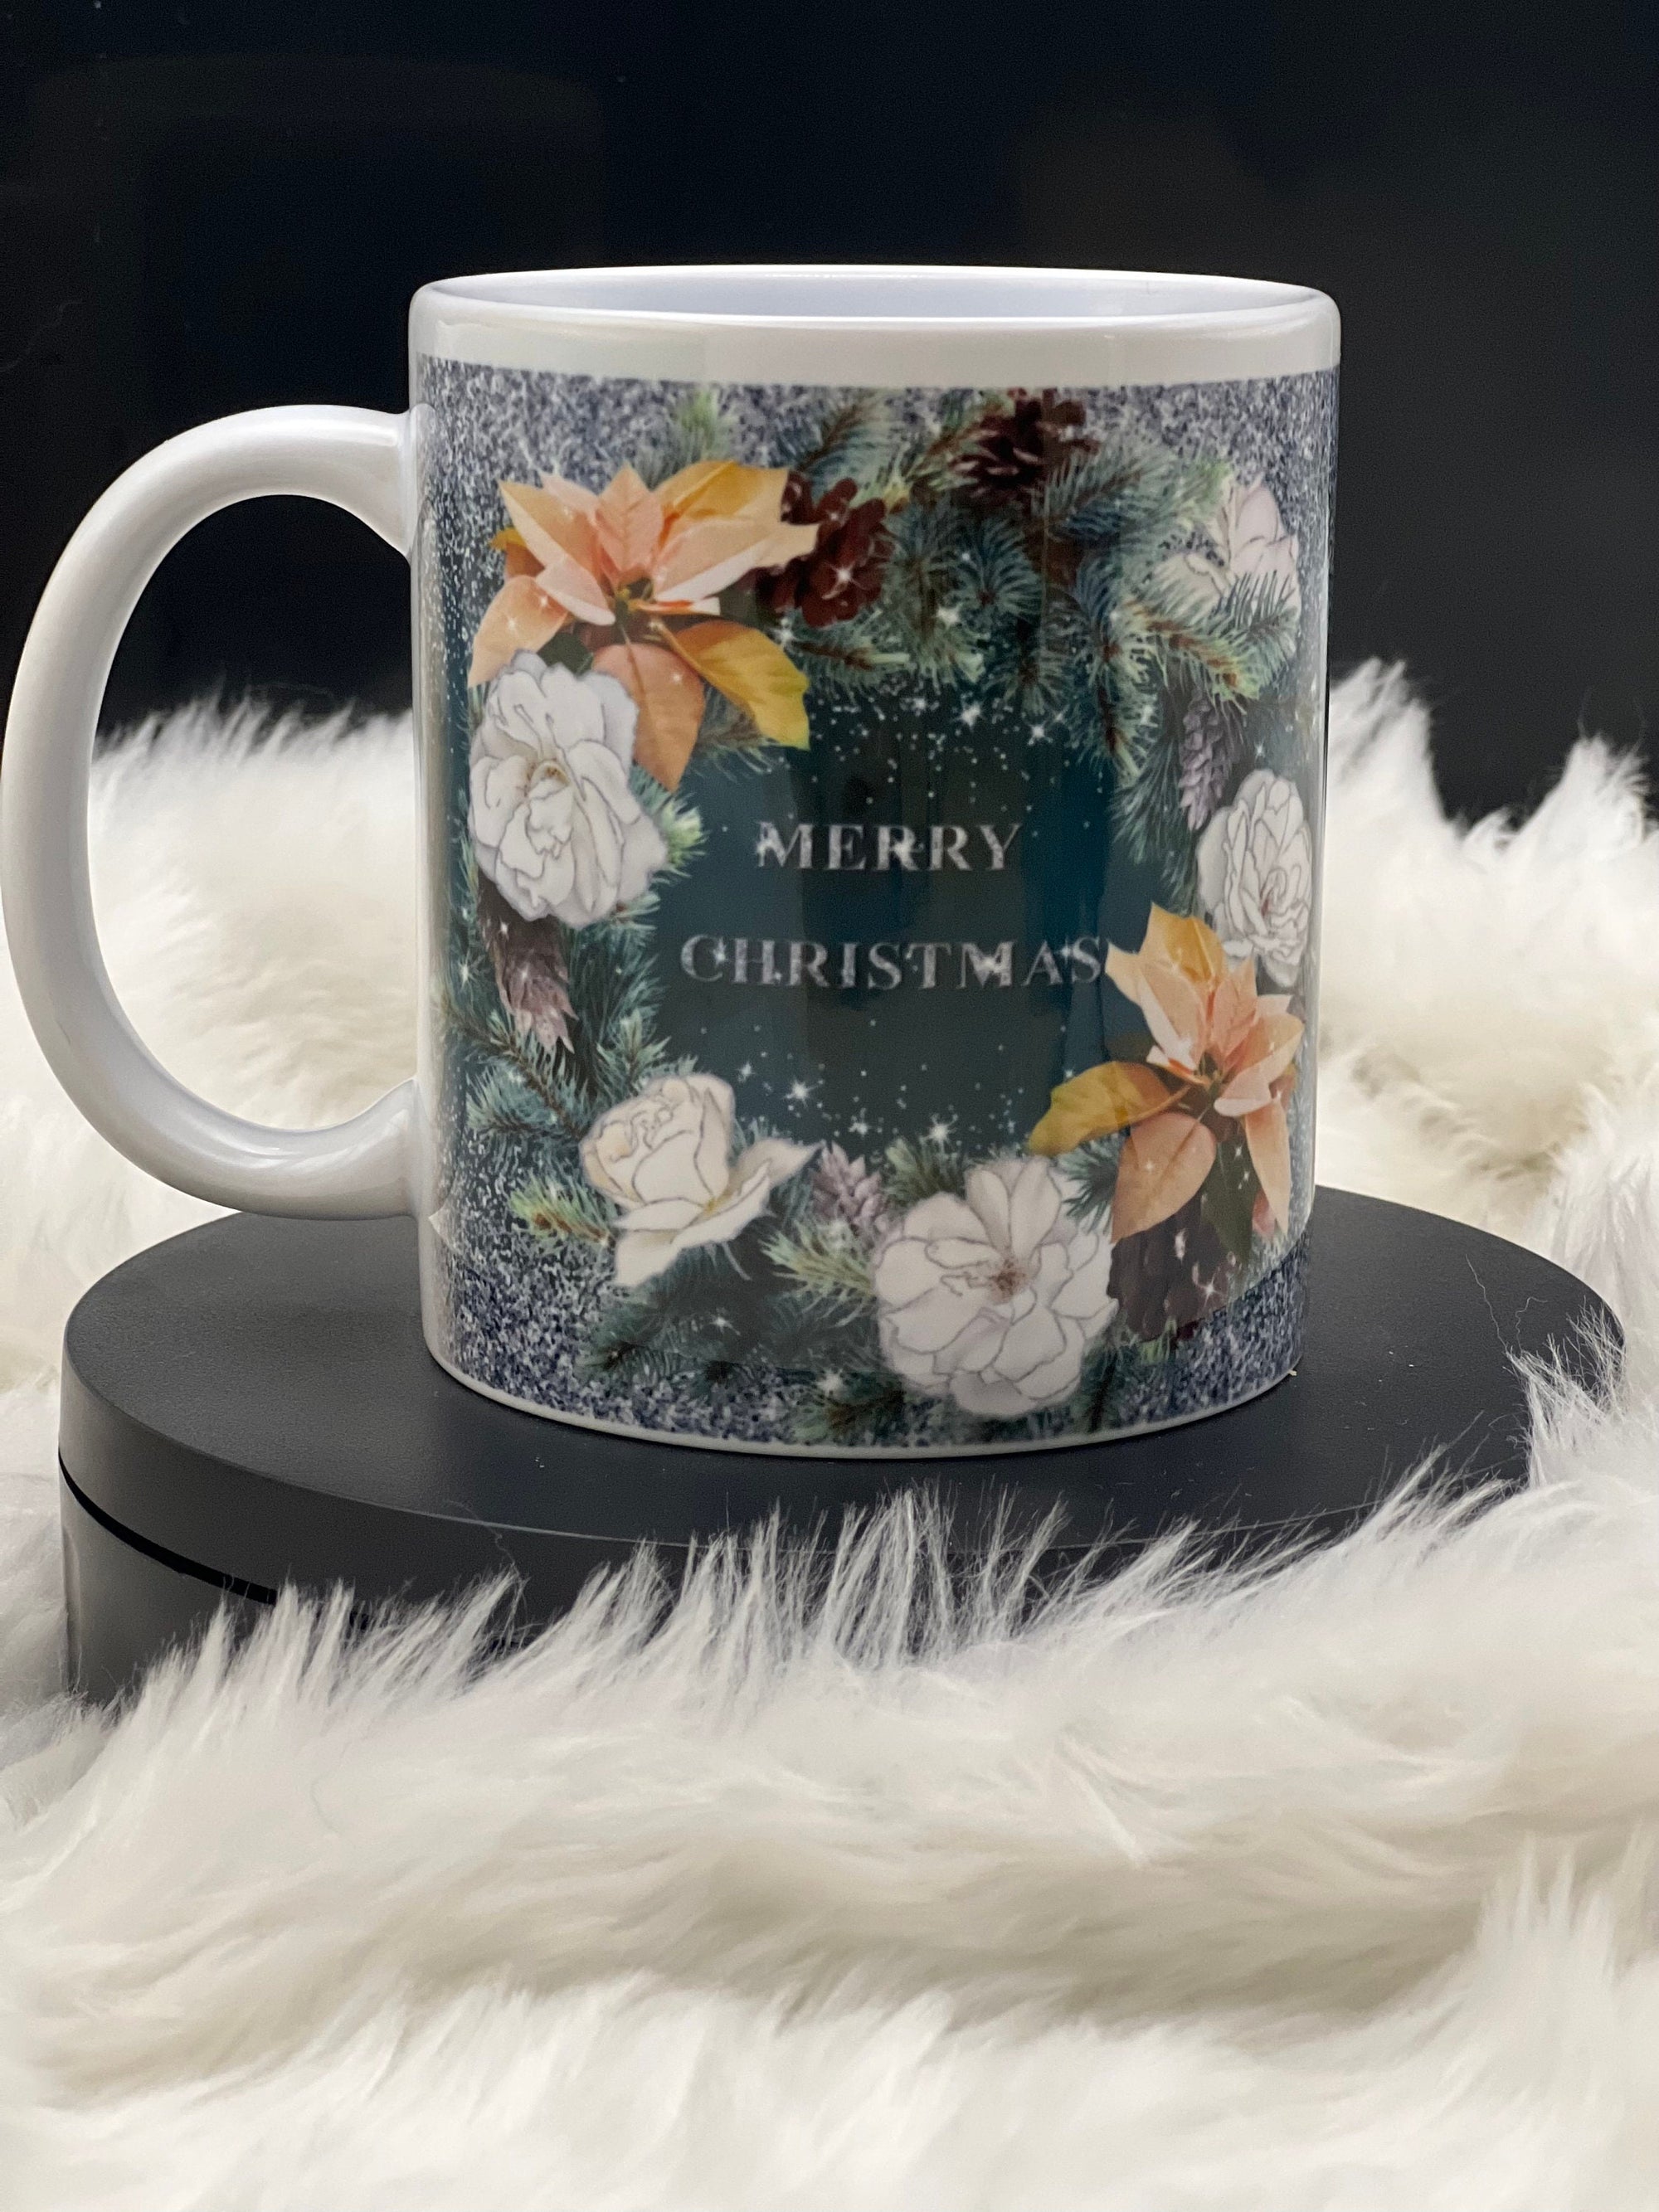 Merry Christmas mug